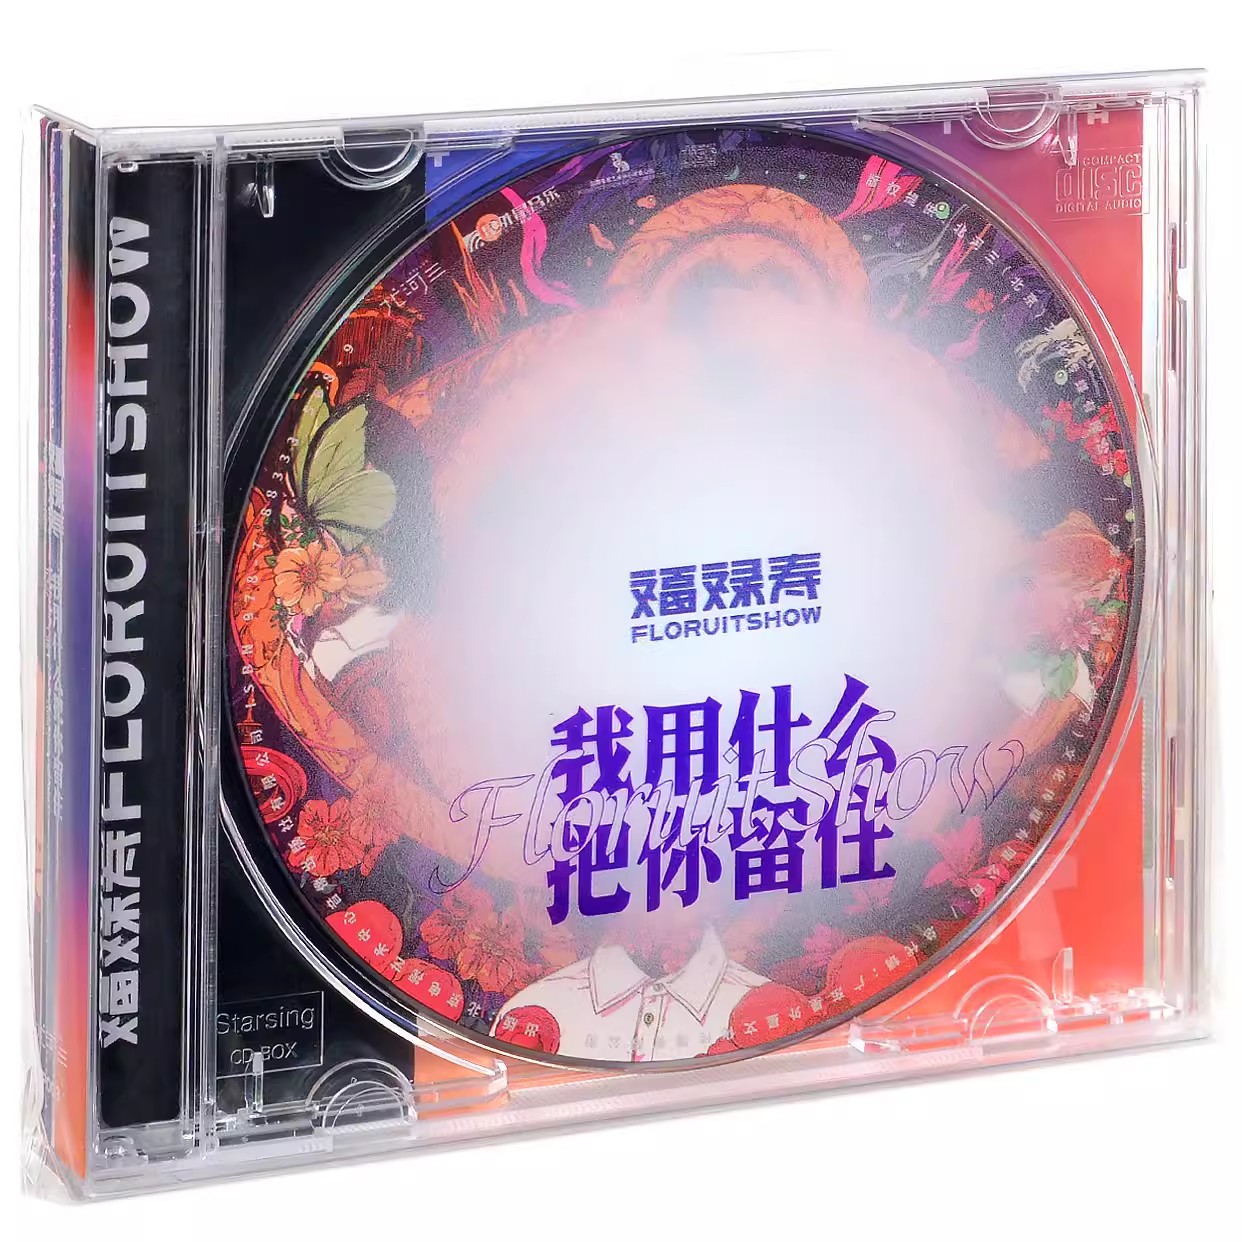 正版唱片 福禄寿乐队专辑《我用什么把你留住》CD FloruitShow